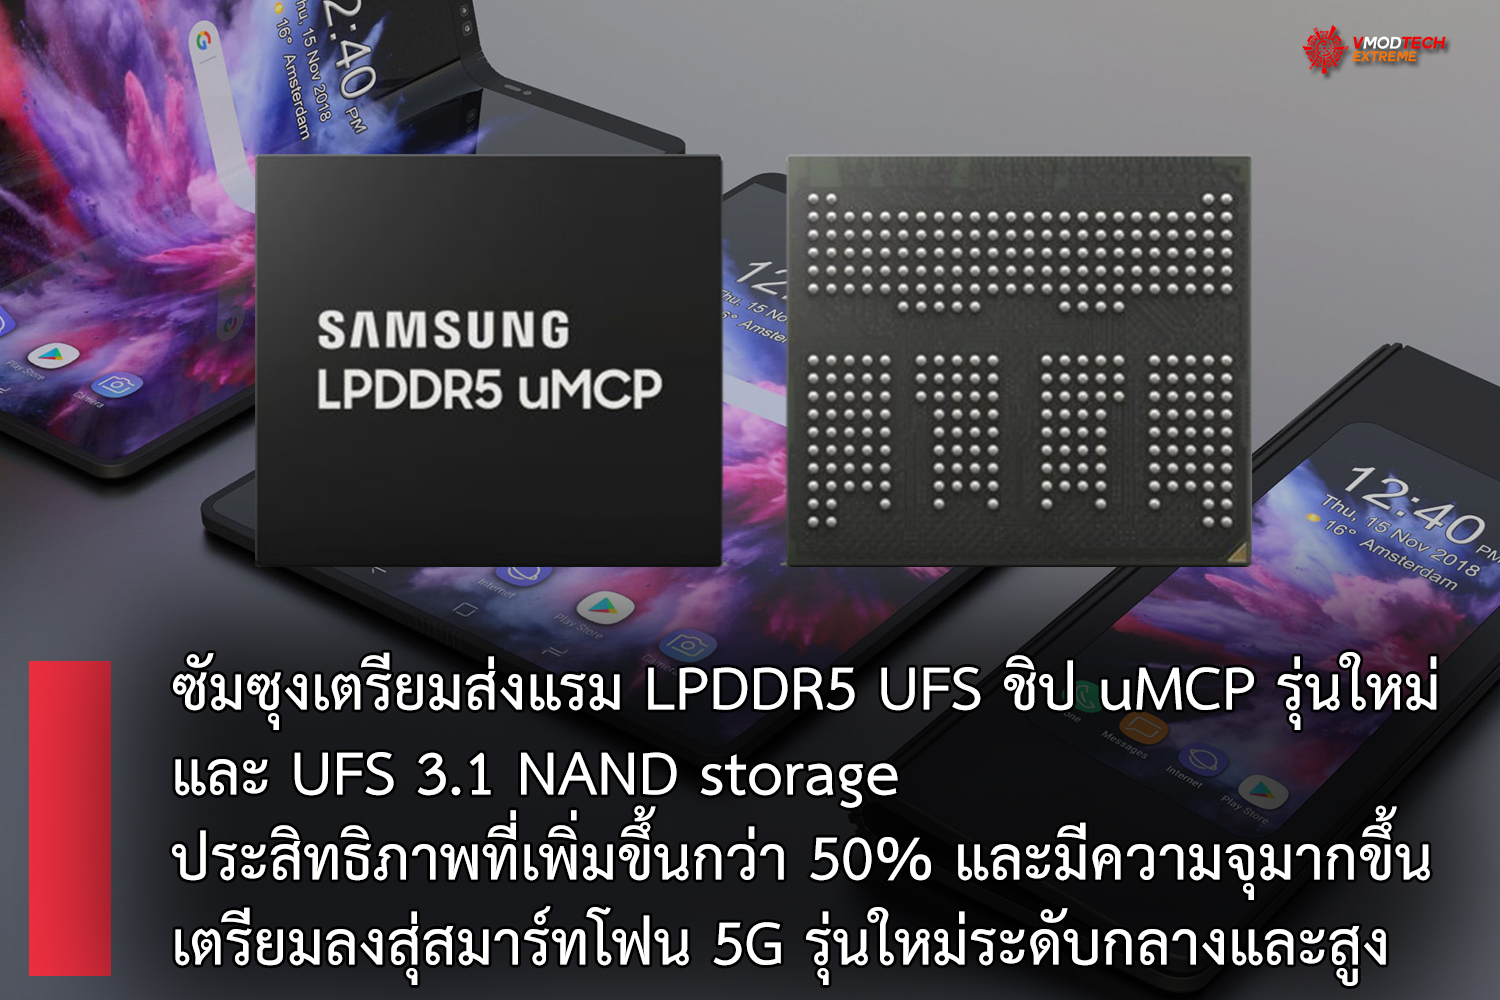 samsung lpddr5 ufs ซัมซุงเตรียมส่งแรม LPDDR5 UFS รุ่นใหม่ล่าสุดใช้ชิปแบบ uMCP เตรียมลงสู่สมาร์ทโฟนระดับกลางและสูงด้วยประสิทธิภาพที่เพิ่มขึ้นกว่า 50% กันเลยทีเดียว